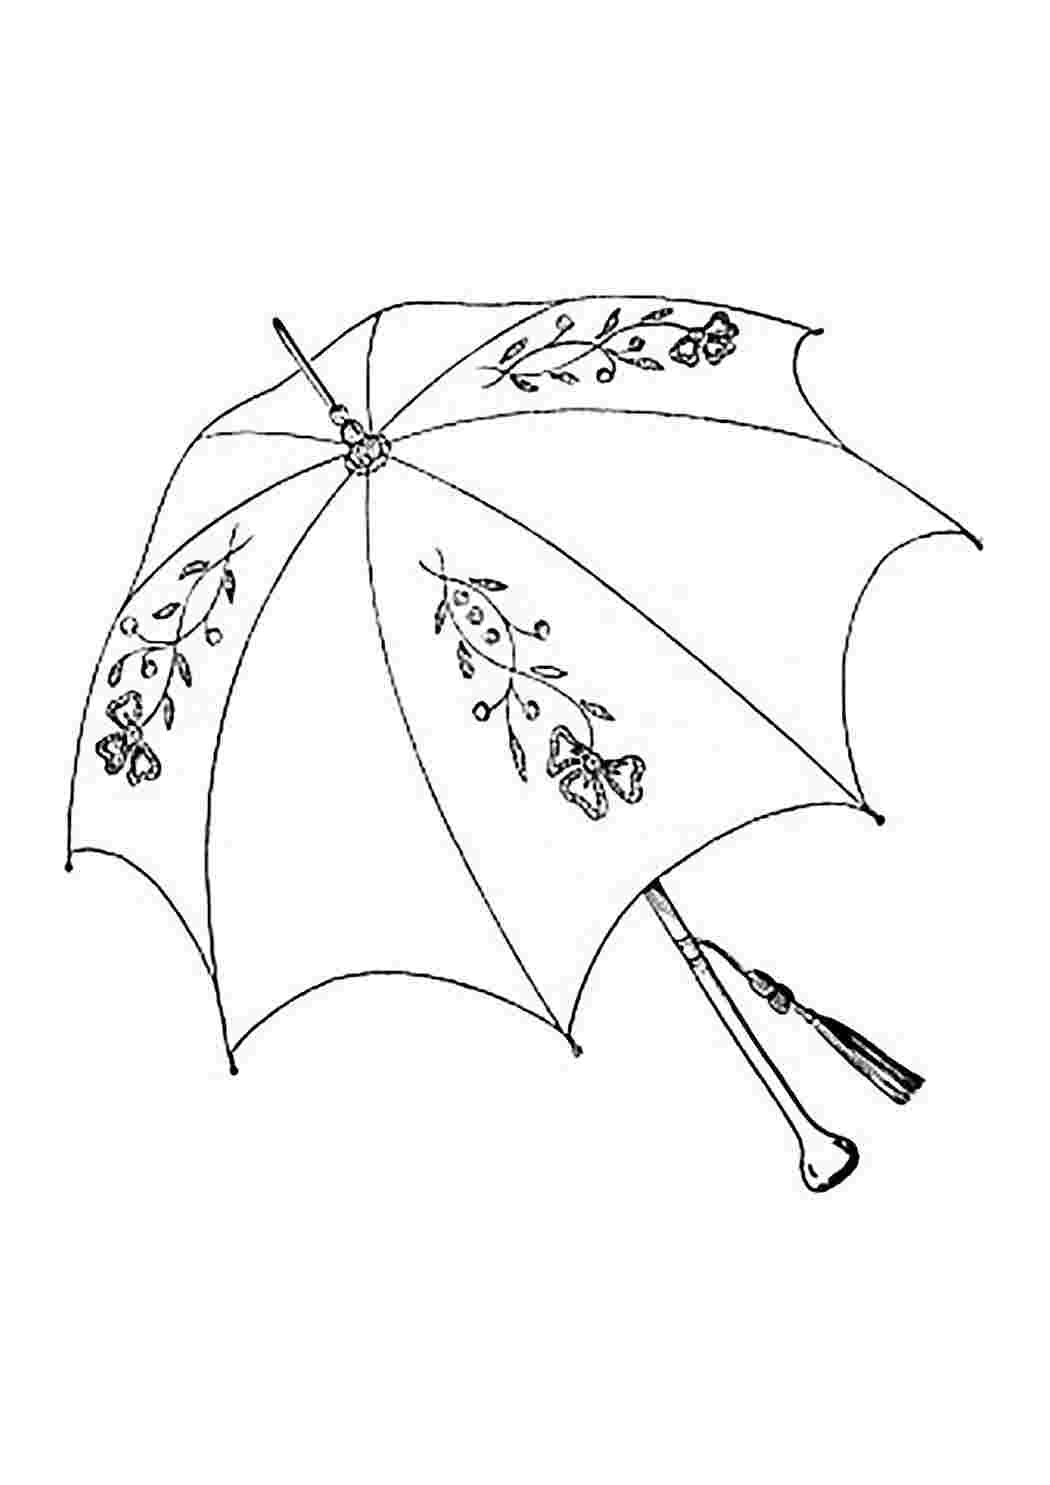 Распечатать зонтик. Зонт раскраска. Зонтик раскраска для малышей. Зонт раскраска для детей. Картинка зонтика для раскрашивания.